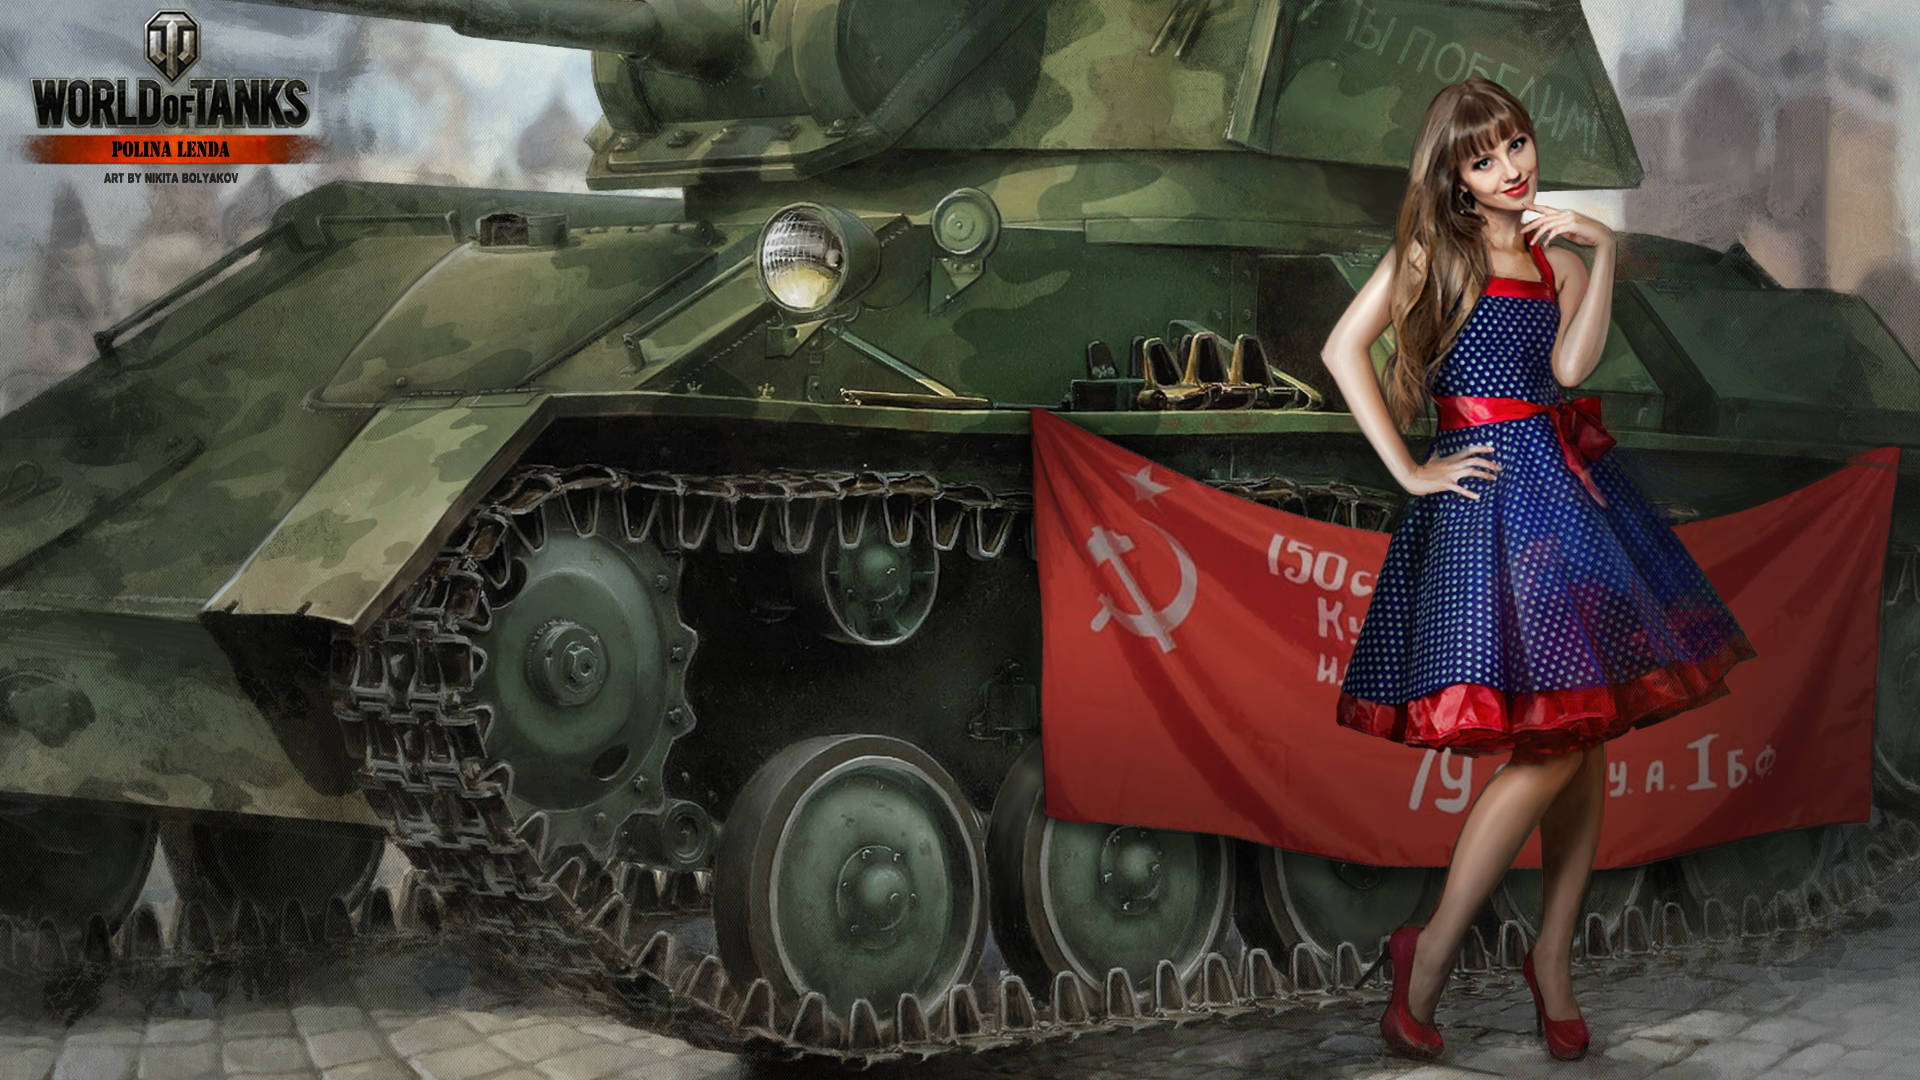 Sovjetunionensflagga På En Tank. Wallpaper